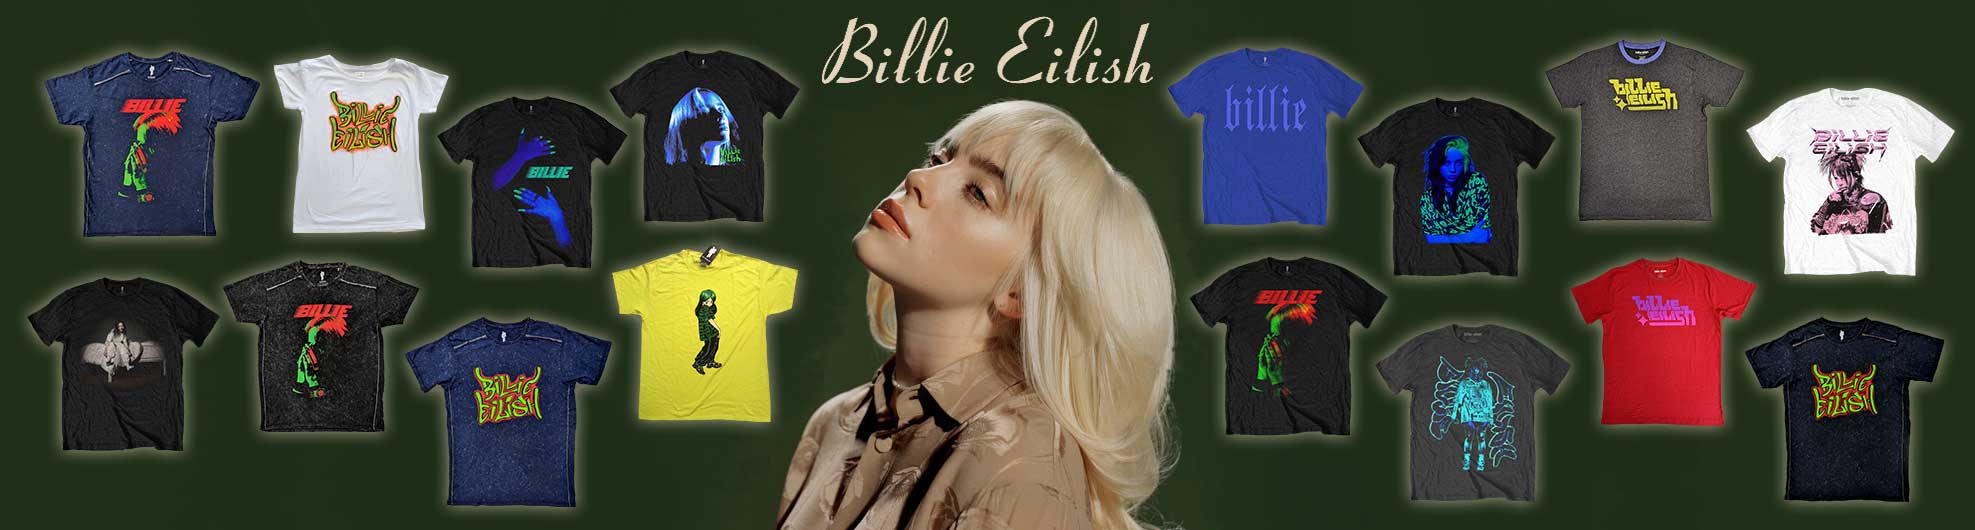 Billie Eillish Official Licensed Merchandise. 